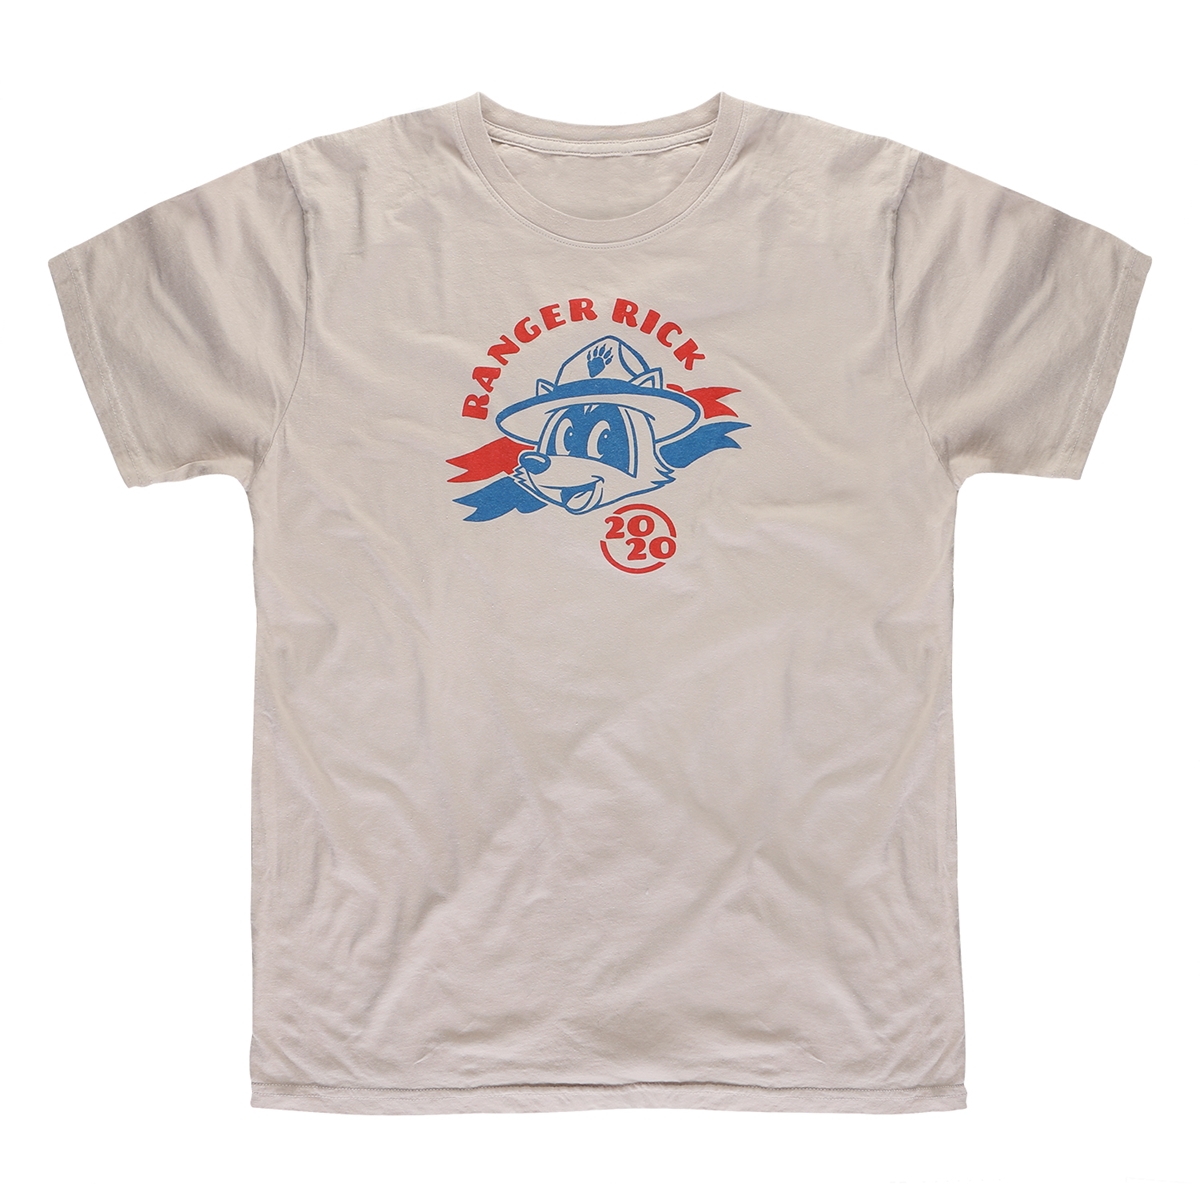 Ranger Rick 2020 T-Shirt